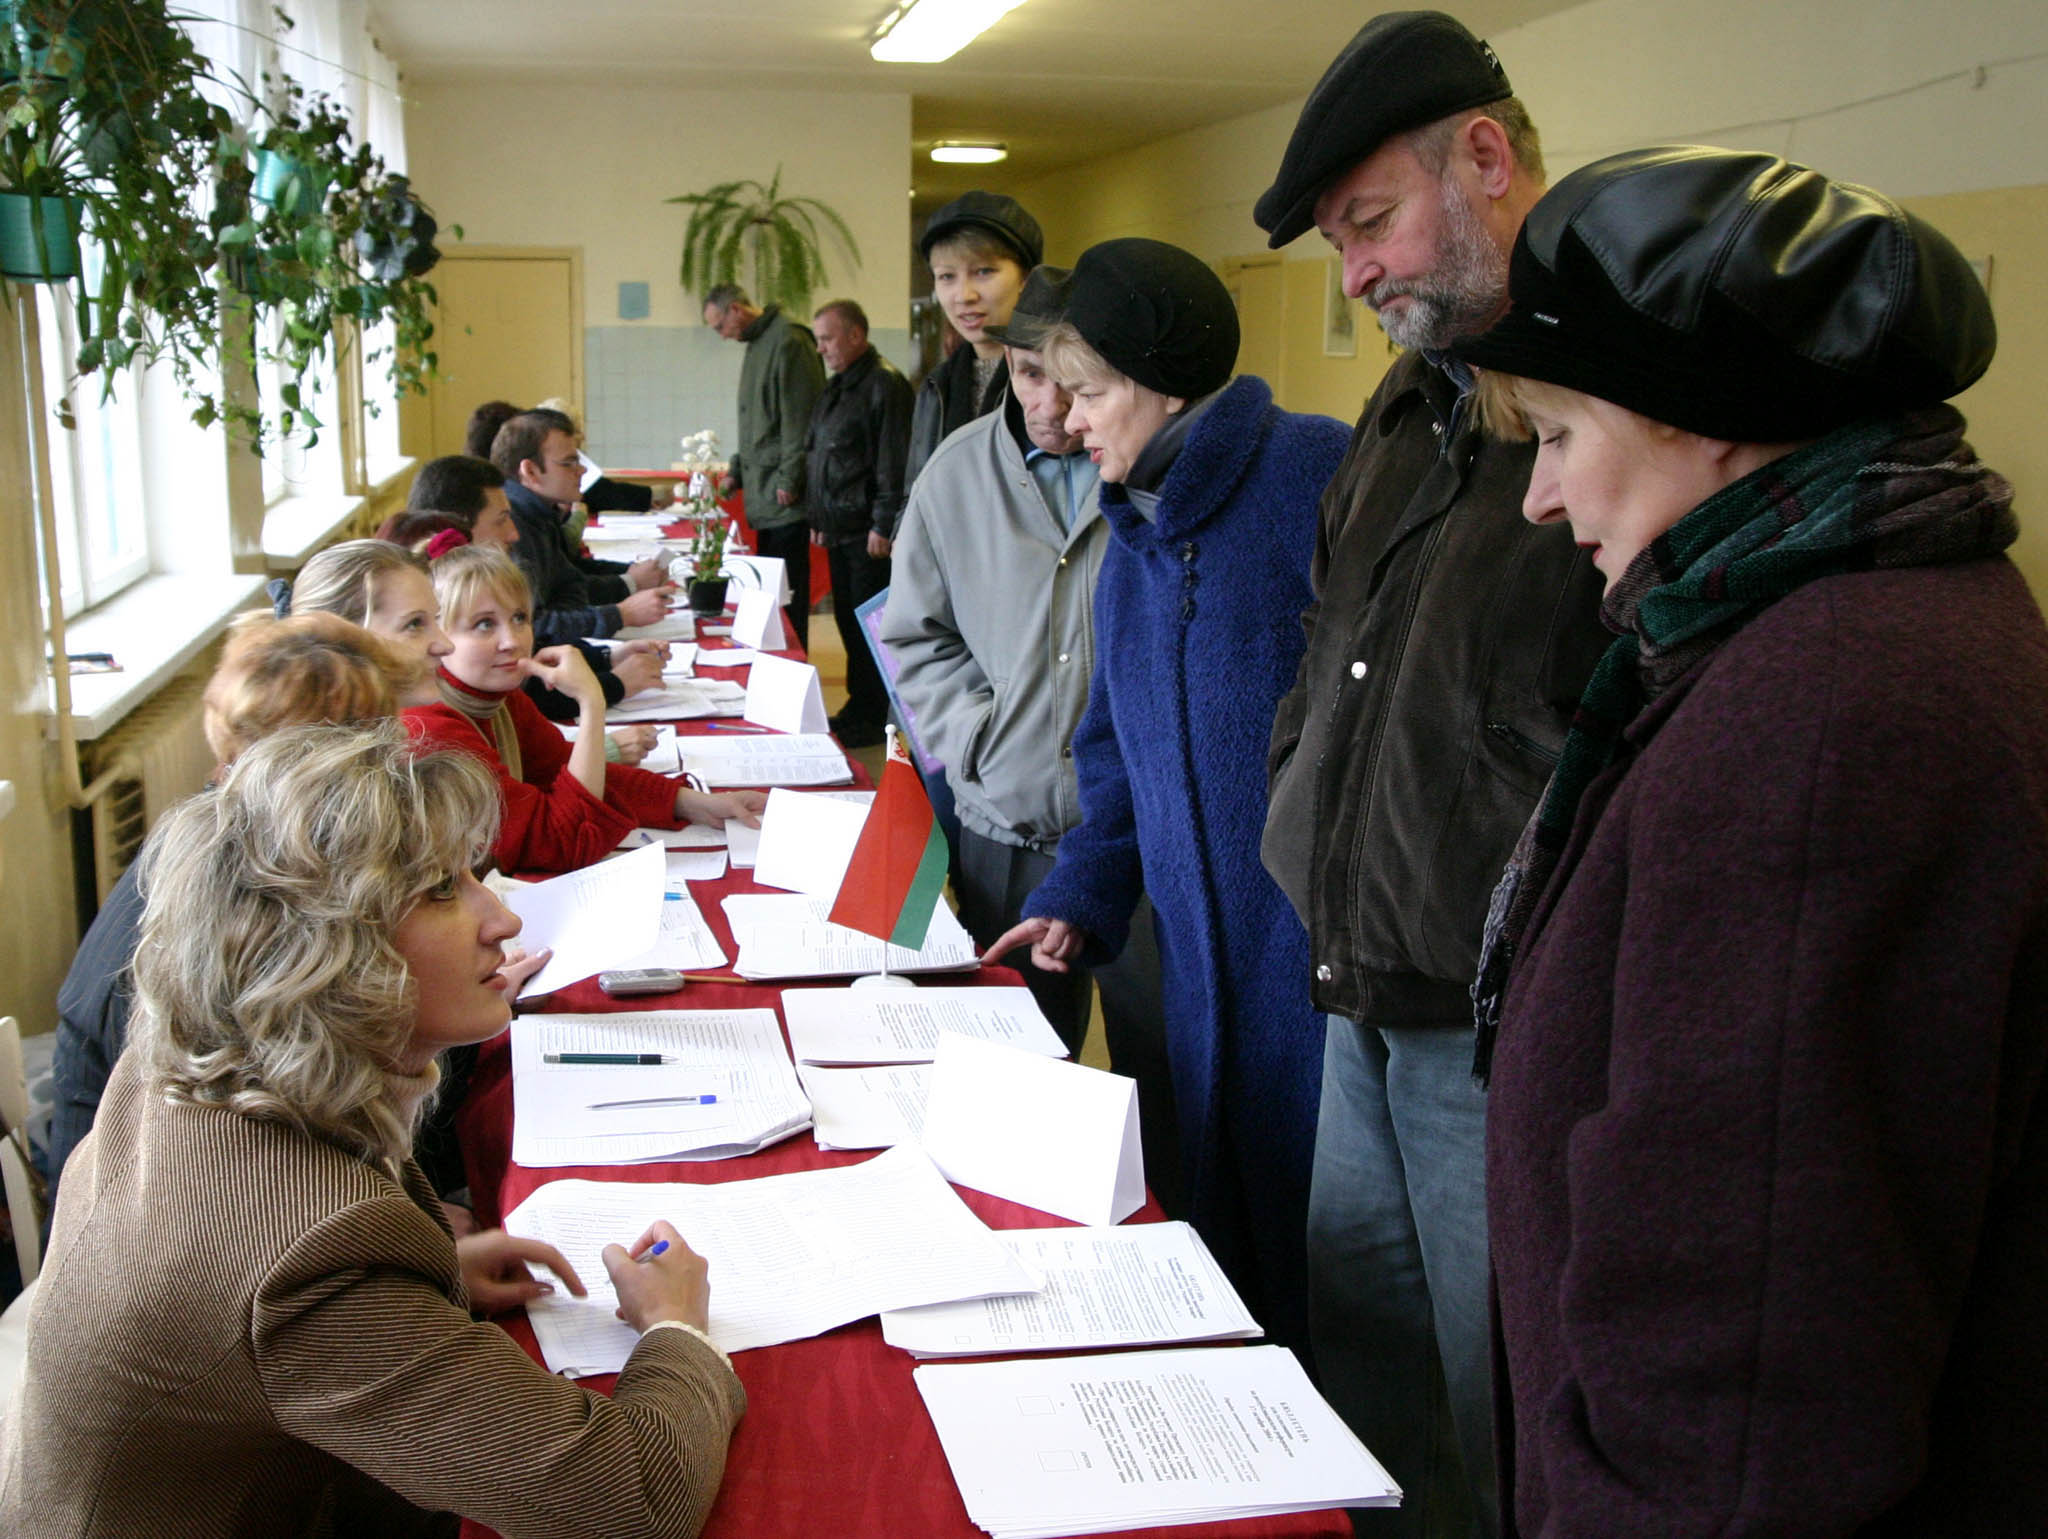 2004: Референдум на фоне Беслана